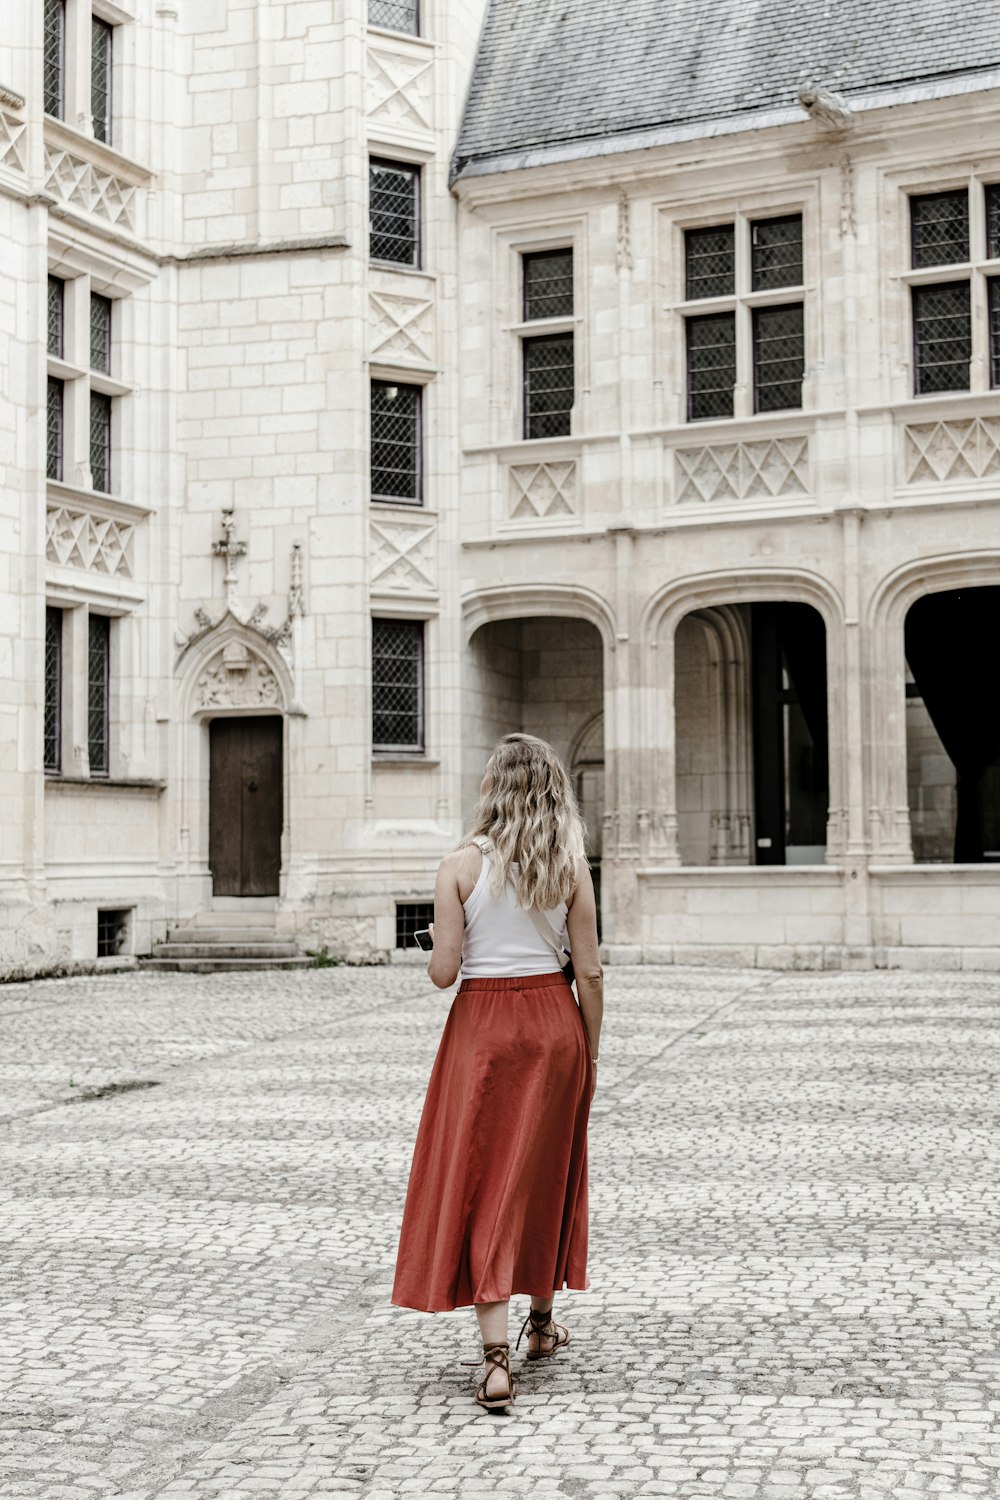 Eine Frau in einem roten Rock steht vor einem großen Gebäude